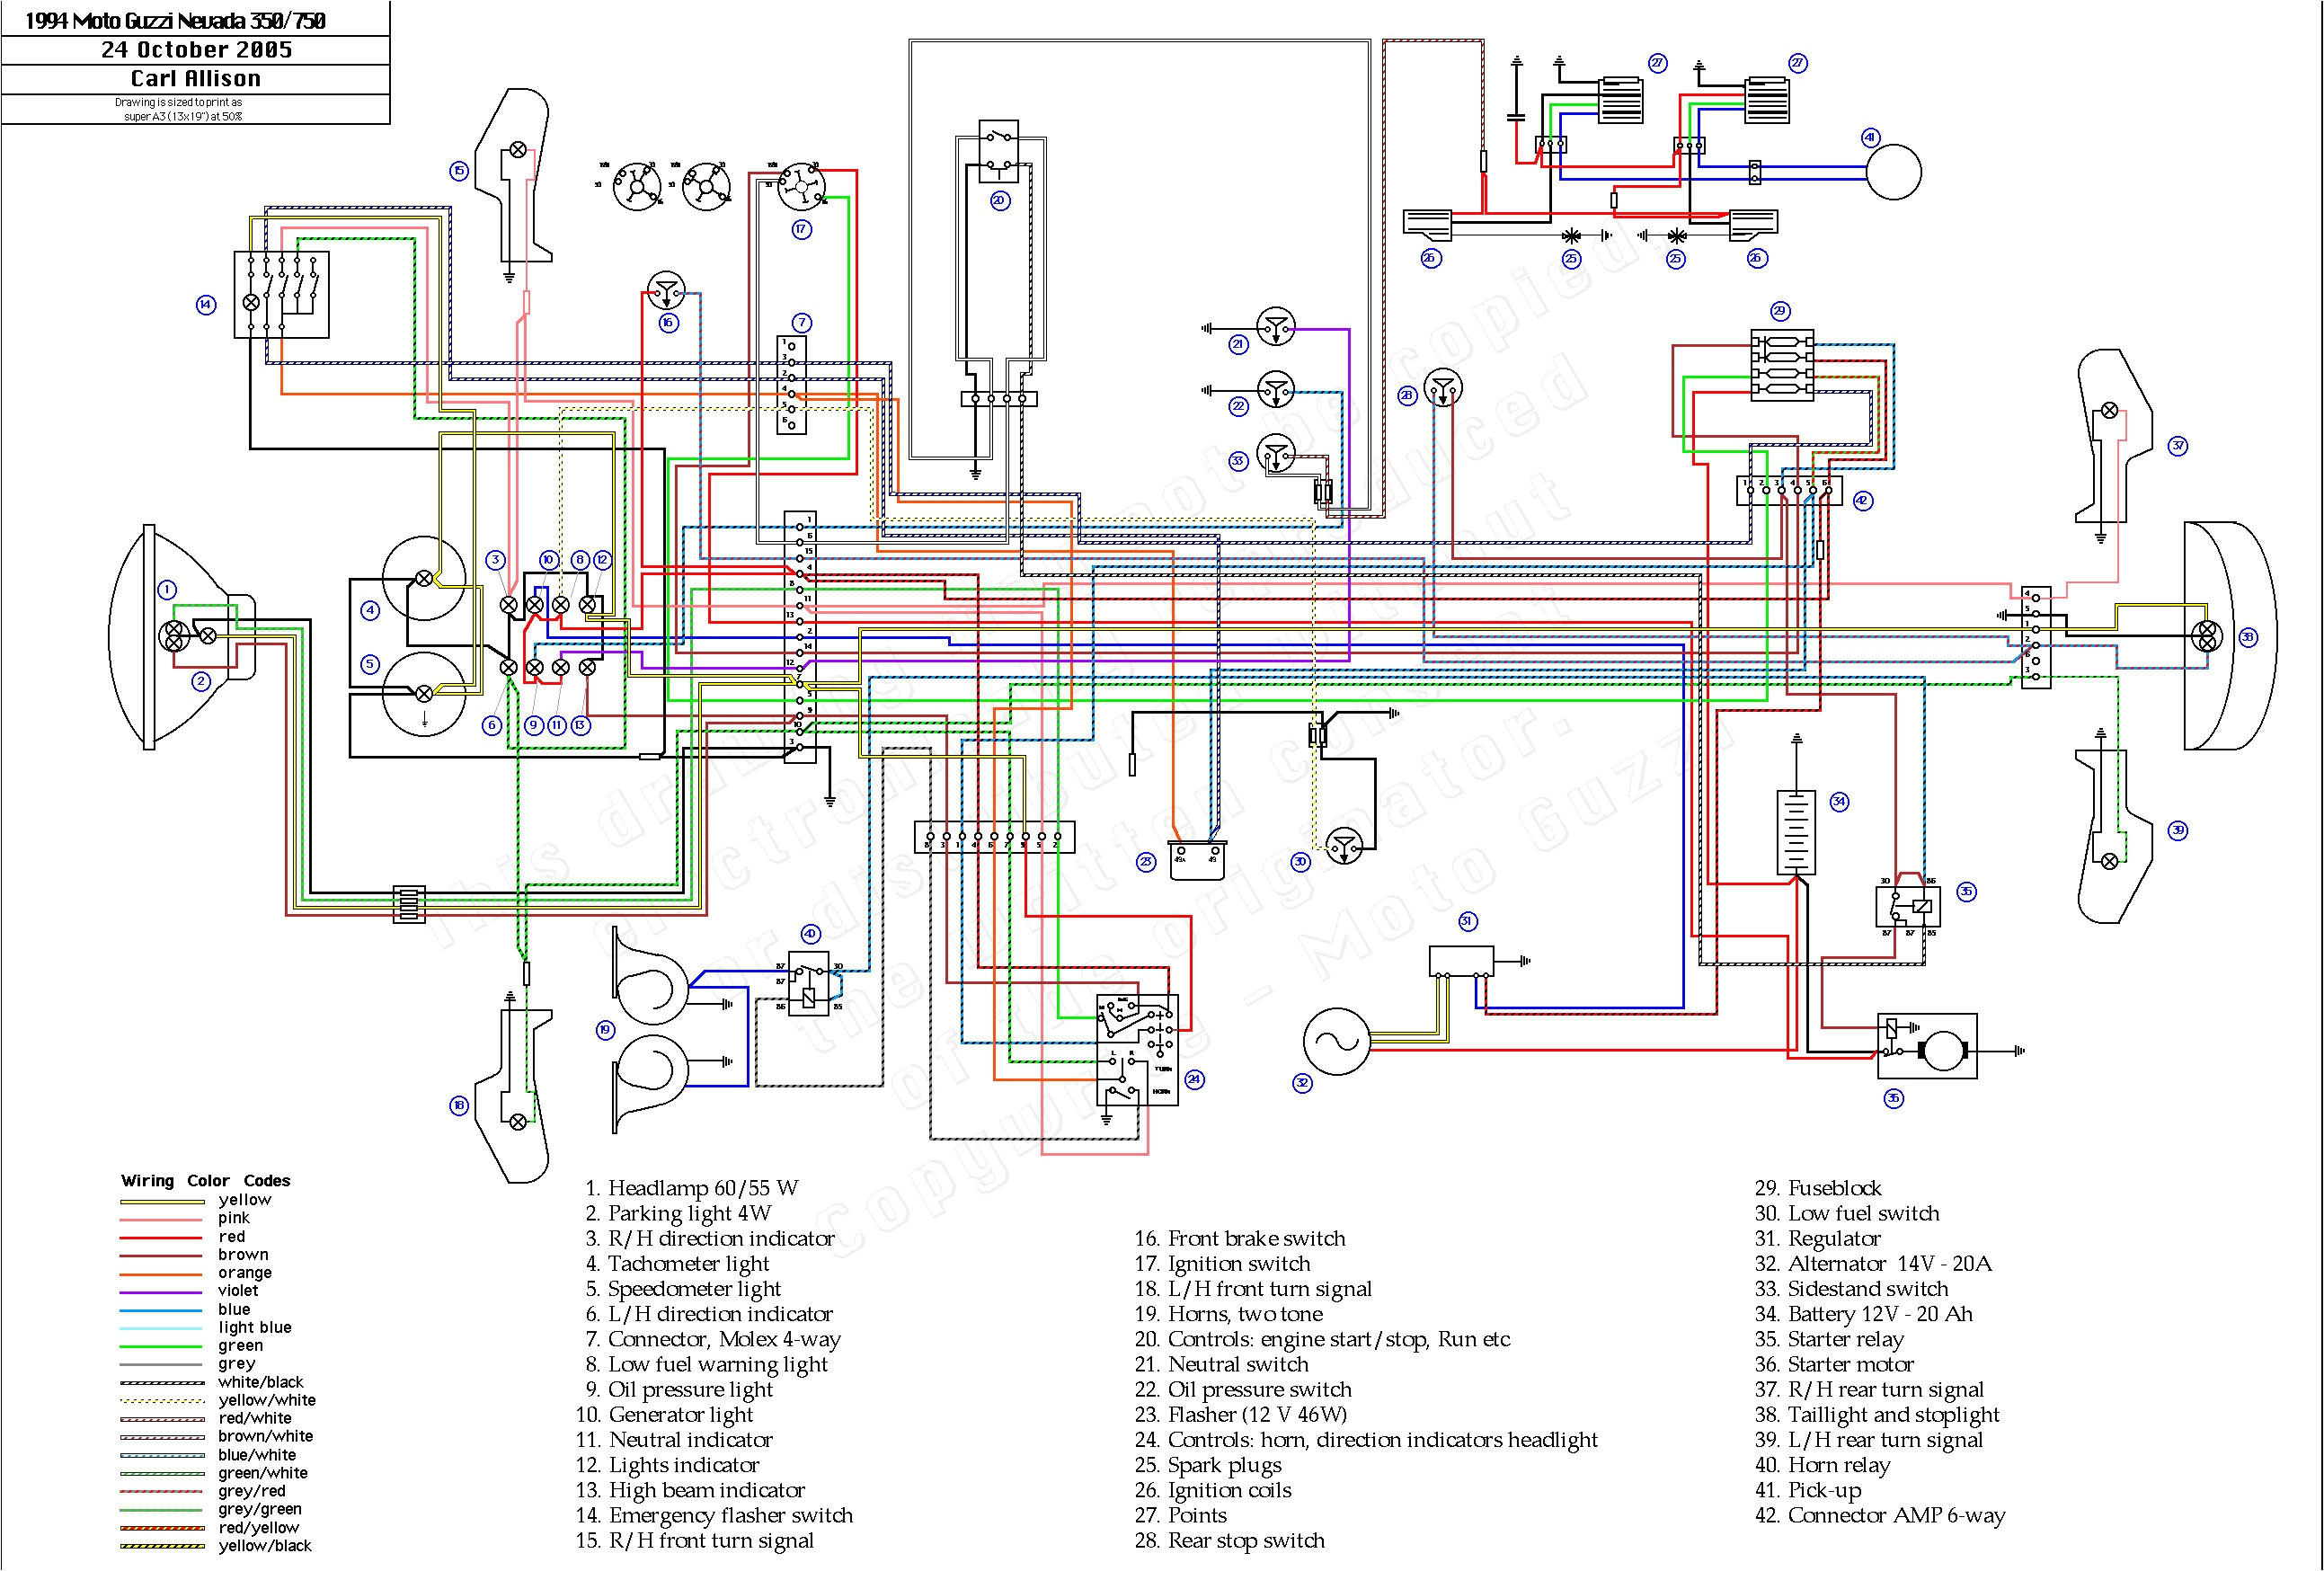 trojan wiring diagram free downloads wiring diagram trojan wiring diagram